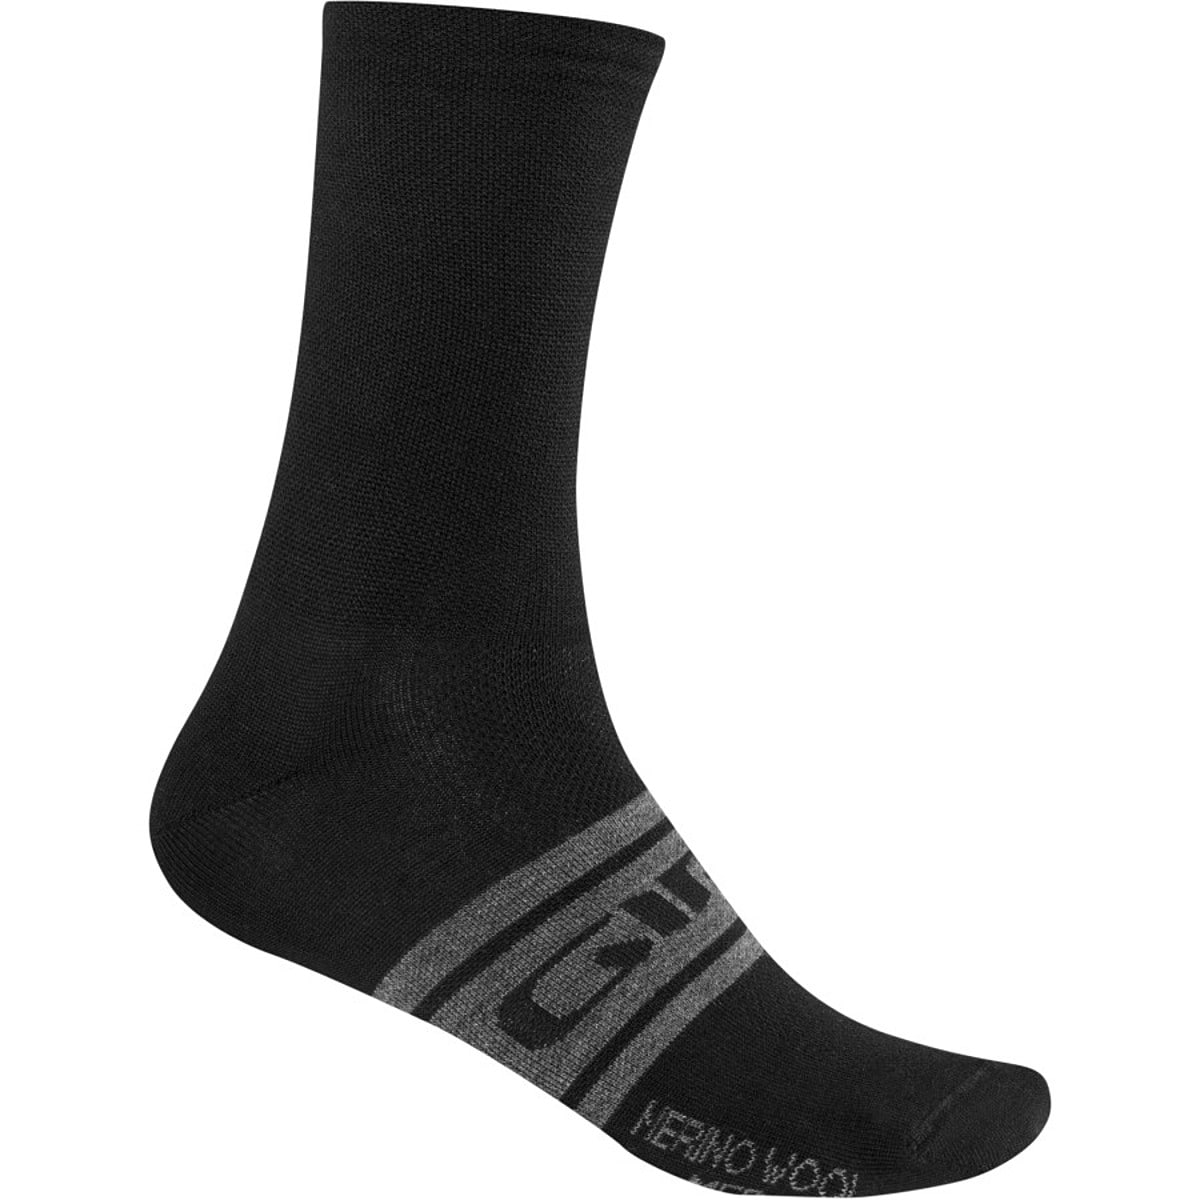 Giro New Road Merino Seasonal Wool Socks - Men's